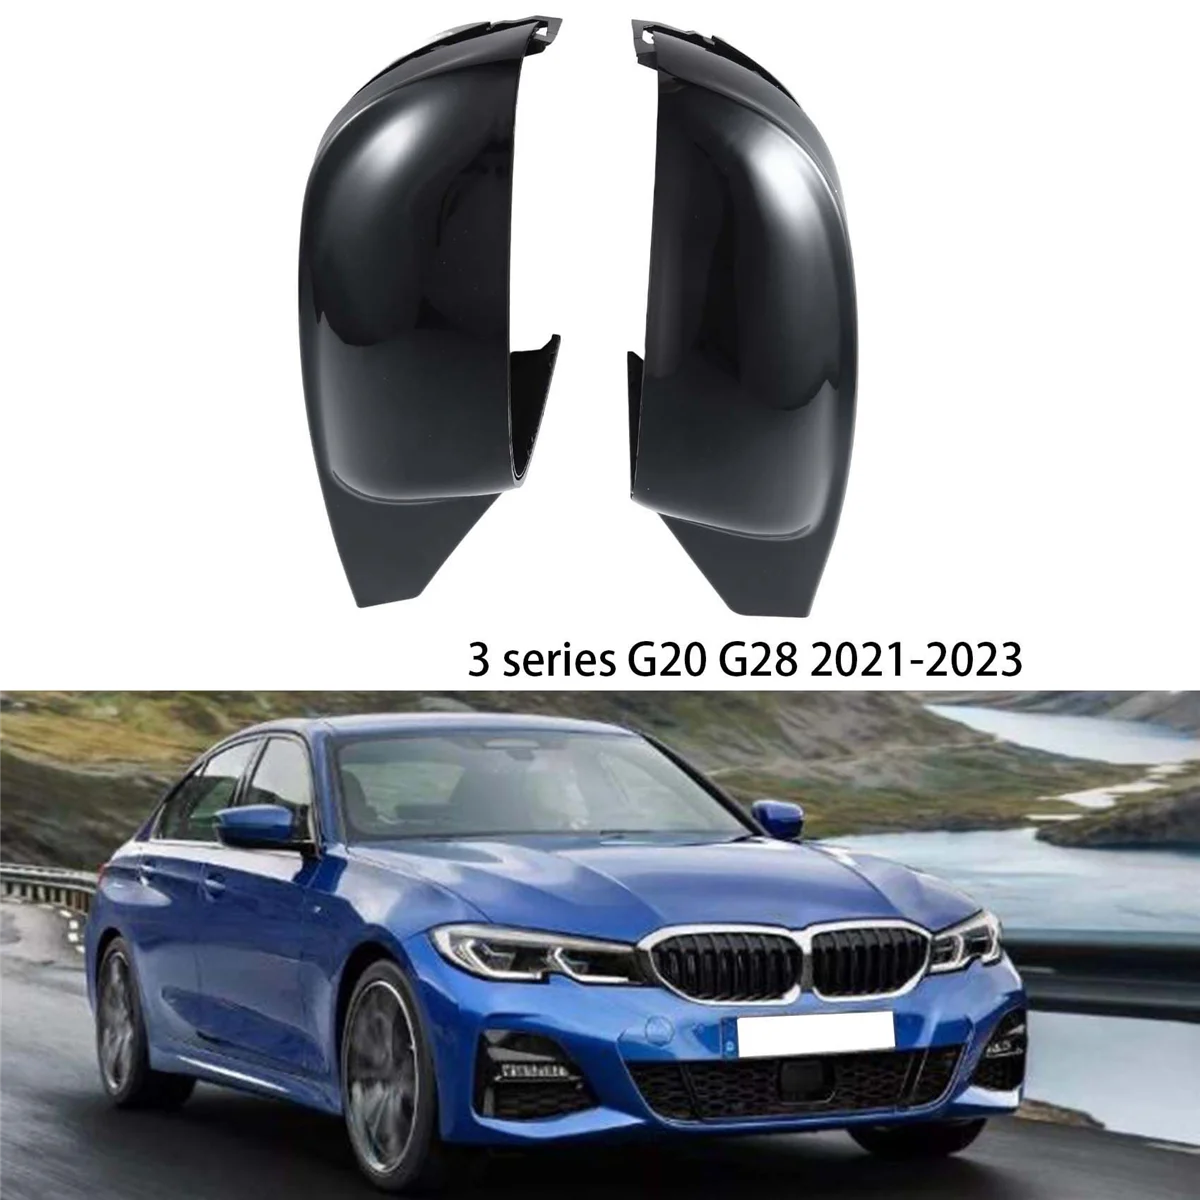 

Чехол для зеркала заднего вида с бульрогом, зеркальная КРЫШКА ДЛЯ BMW новой серии 3 G20 G28 2021-2023